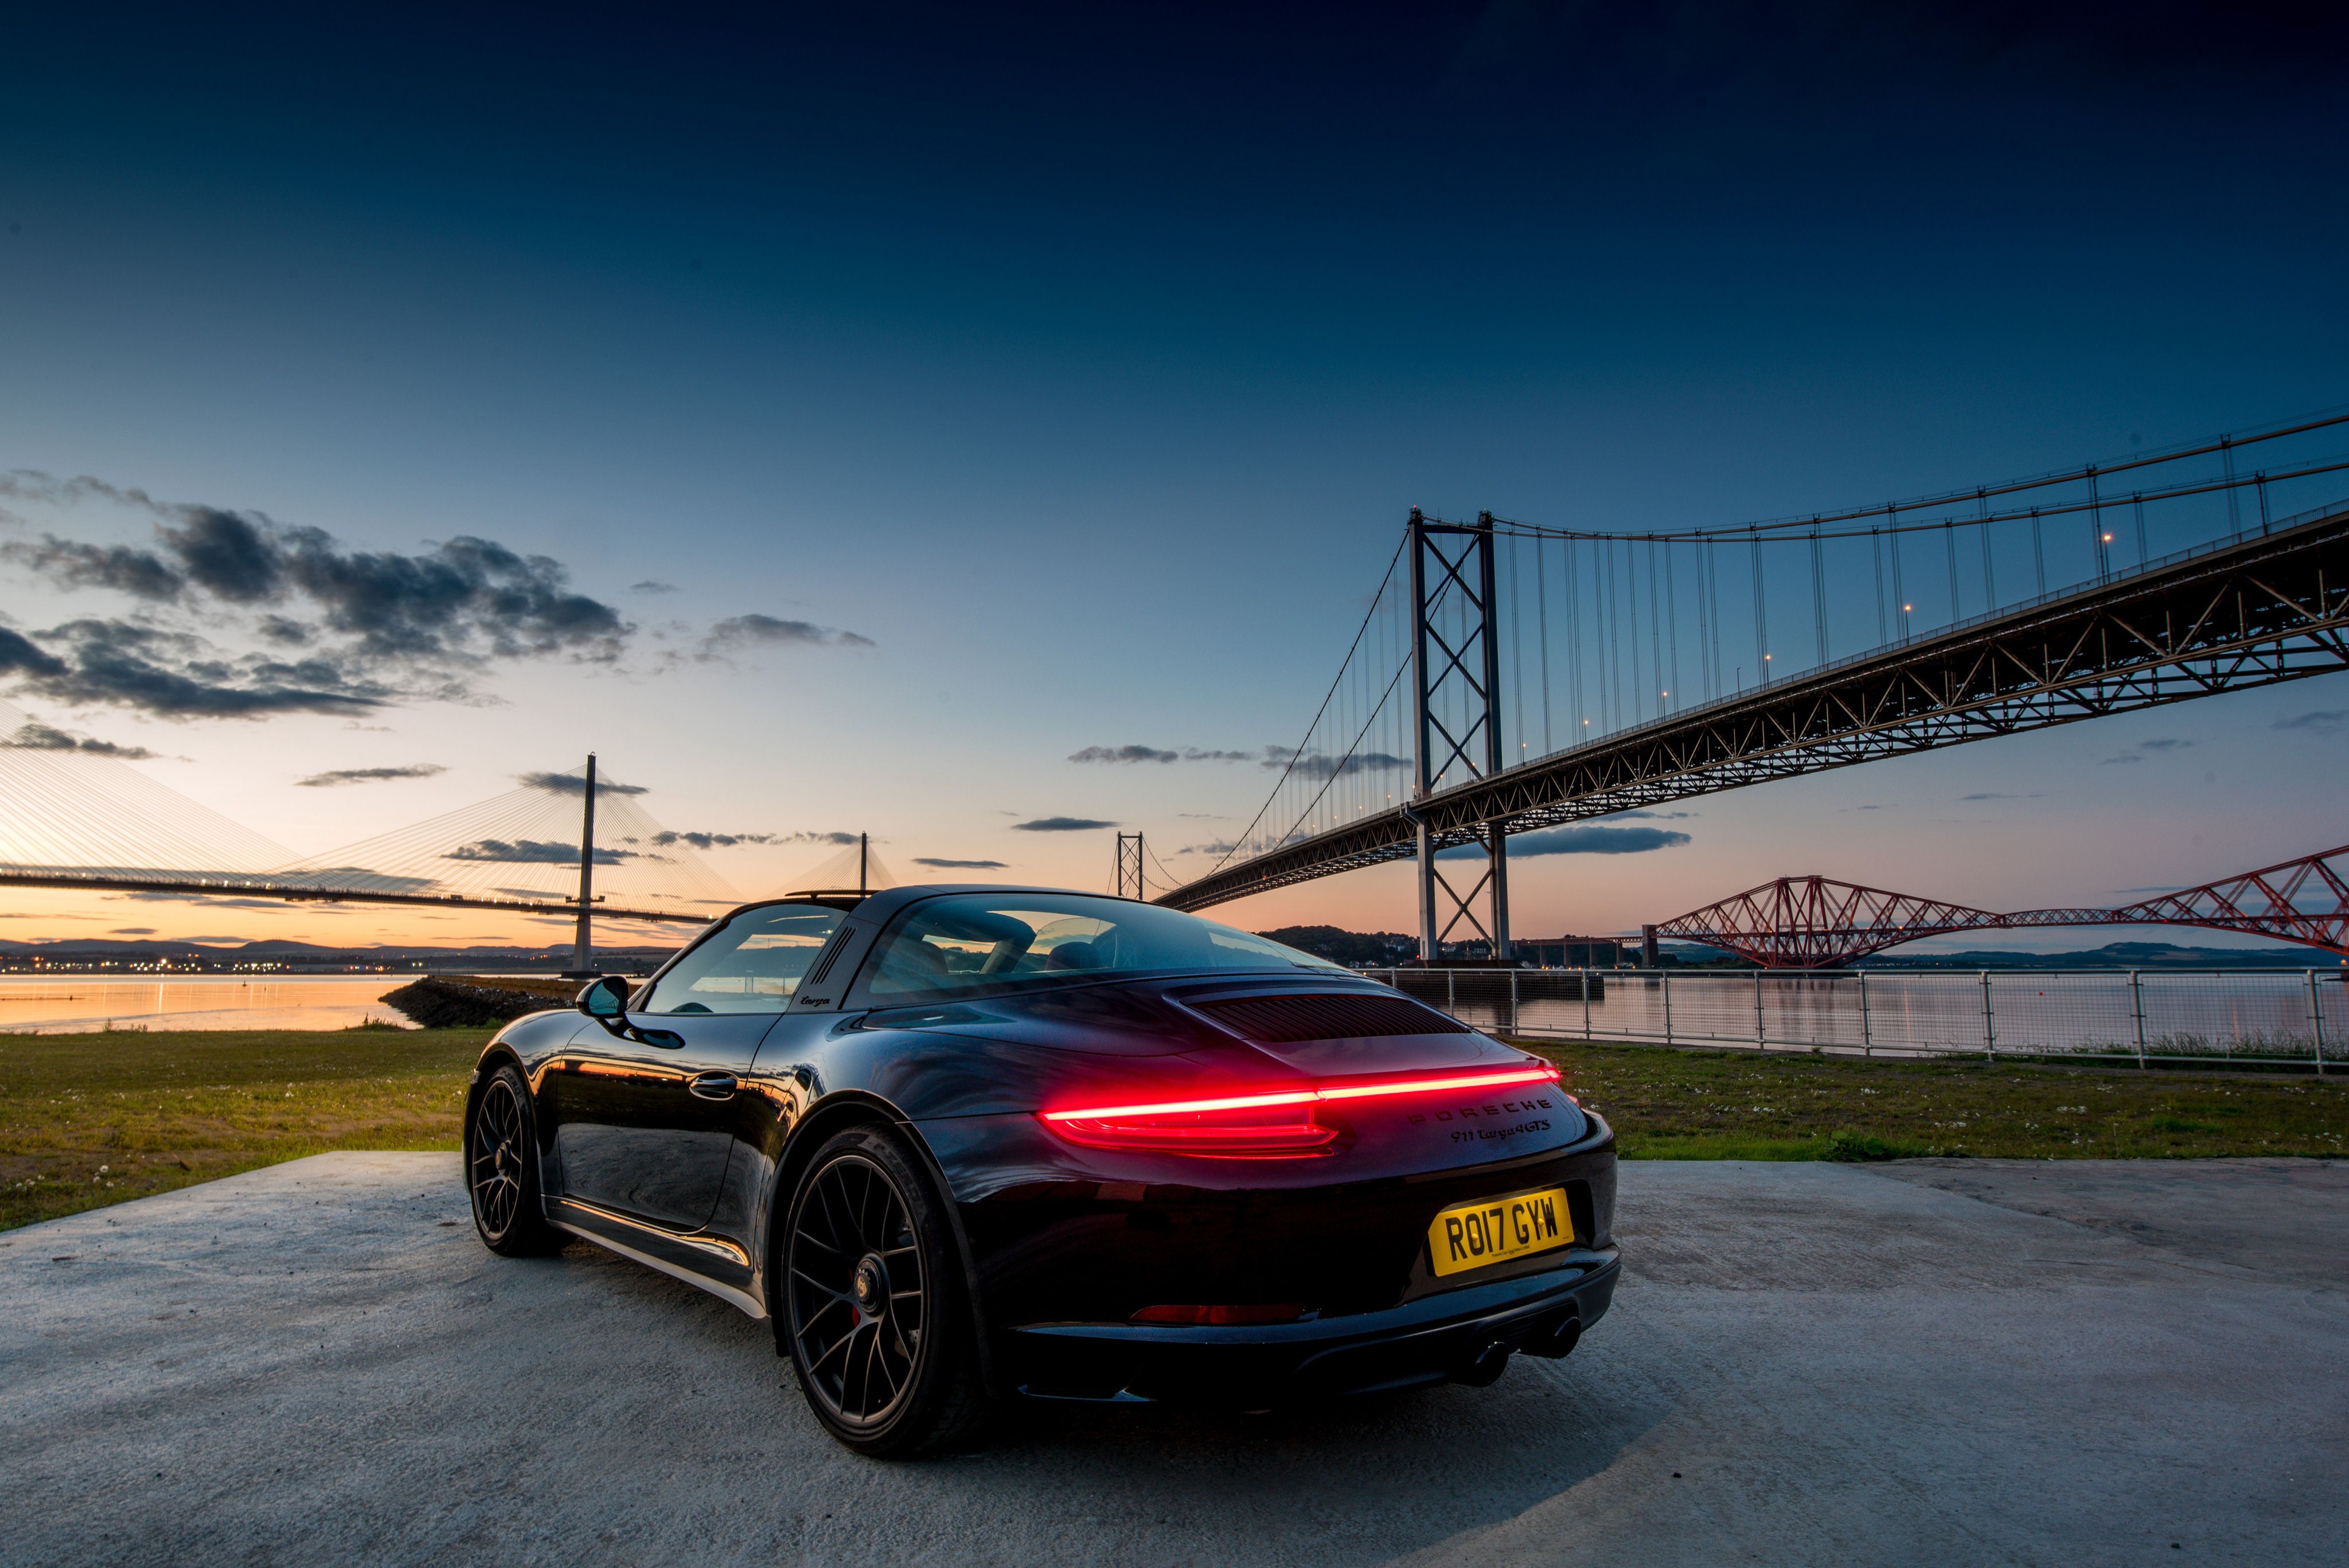 Thưởng thức hiện thực và cảm nhận chất lượng tuyệt vời với bộ sưu tập ảnh nền Porsche 911 Targa độc đáo. Bạn sẽ bị cuốn hút bởi vẻ đẹp cổ điển và hiện đại của chiếc xe này trên mỗi bức hình. Hãy đến và khám phá những hình ảnh tuyệt vời này ngay hôm nay.